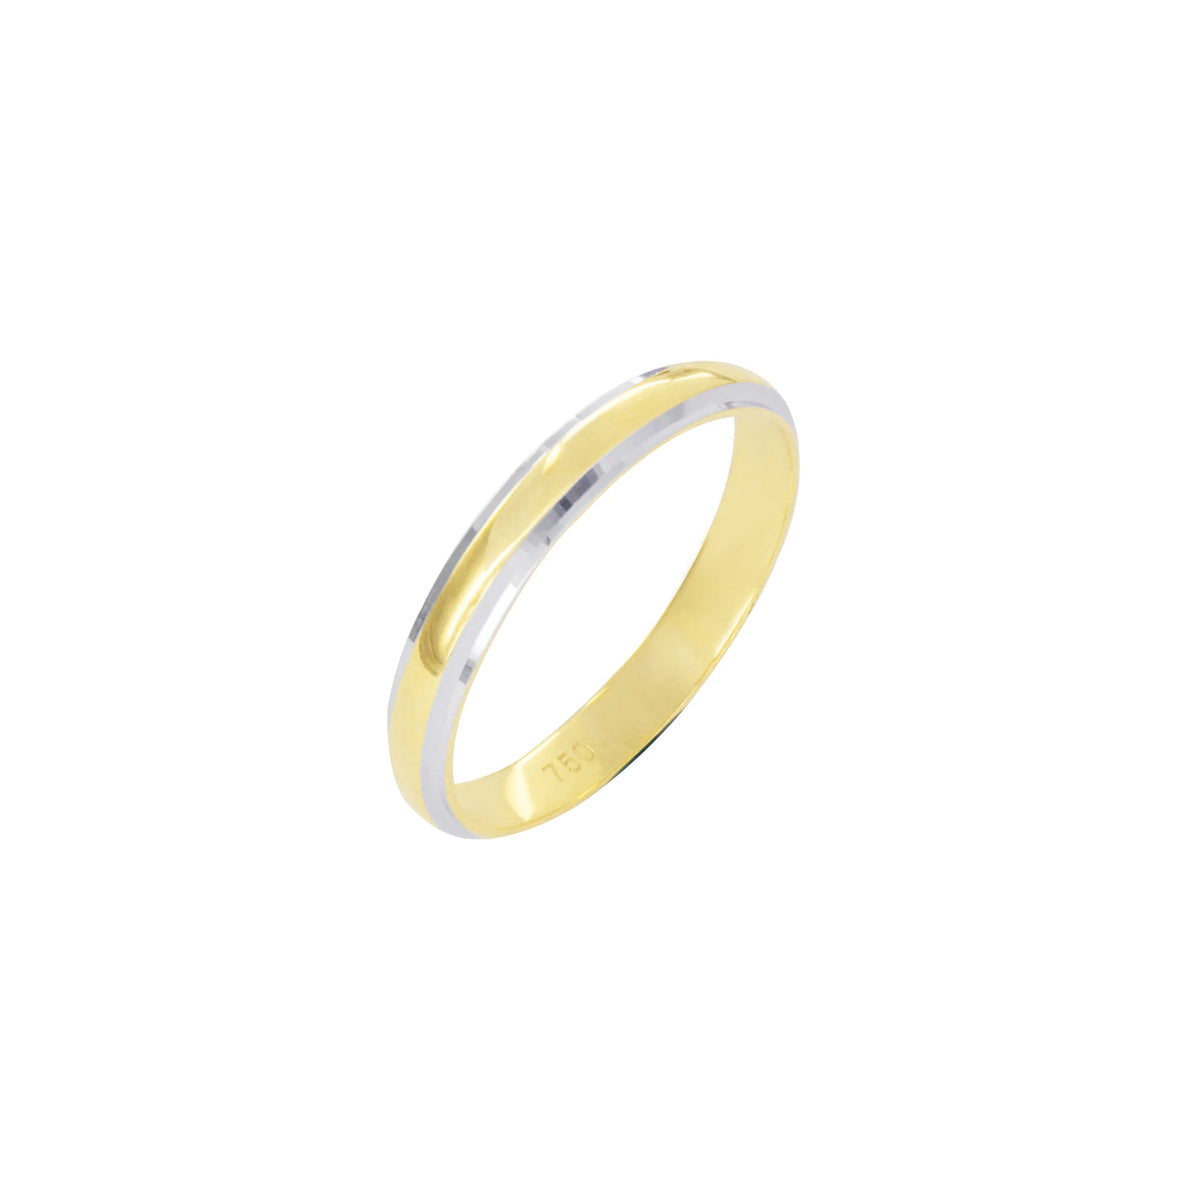 Buy quality 916 hallmark gold Fancy ring in Mumbai